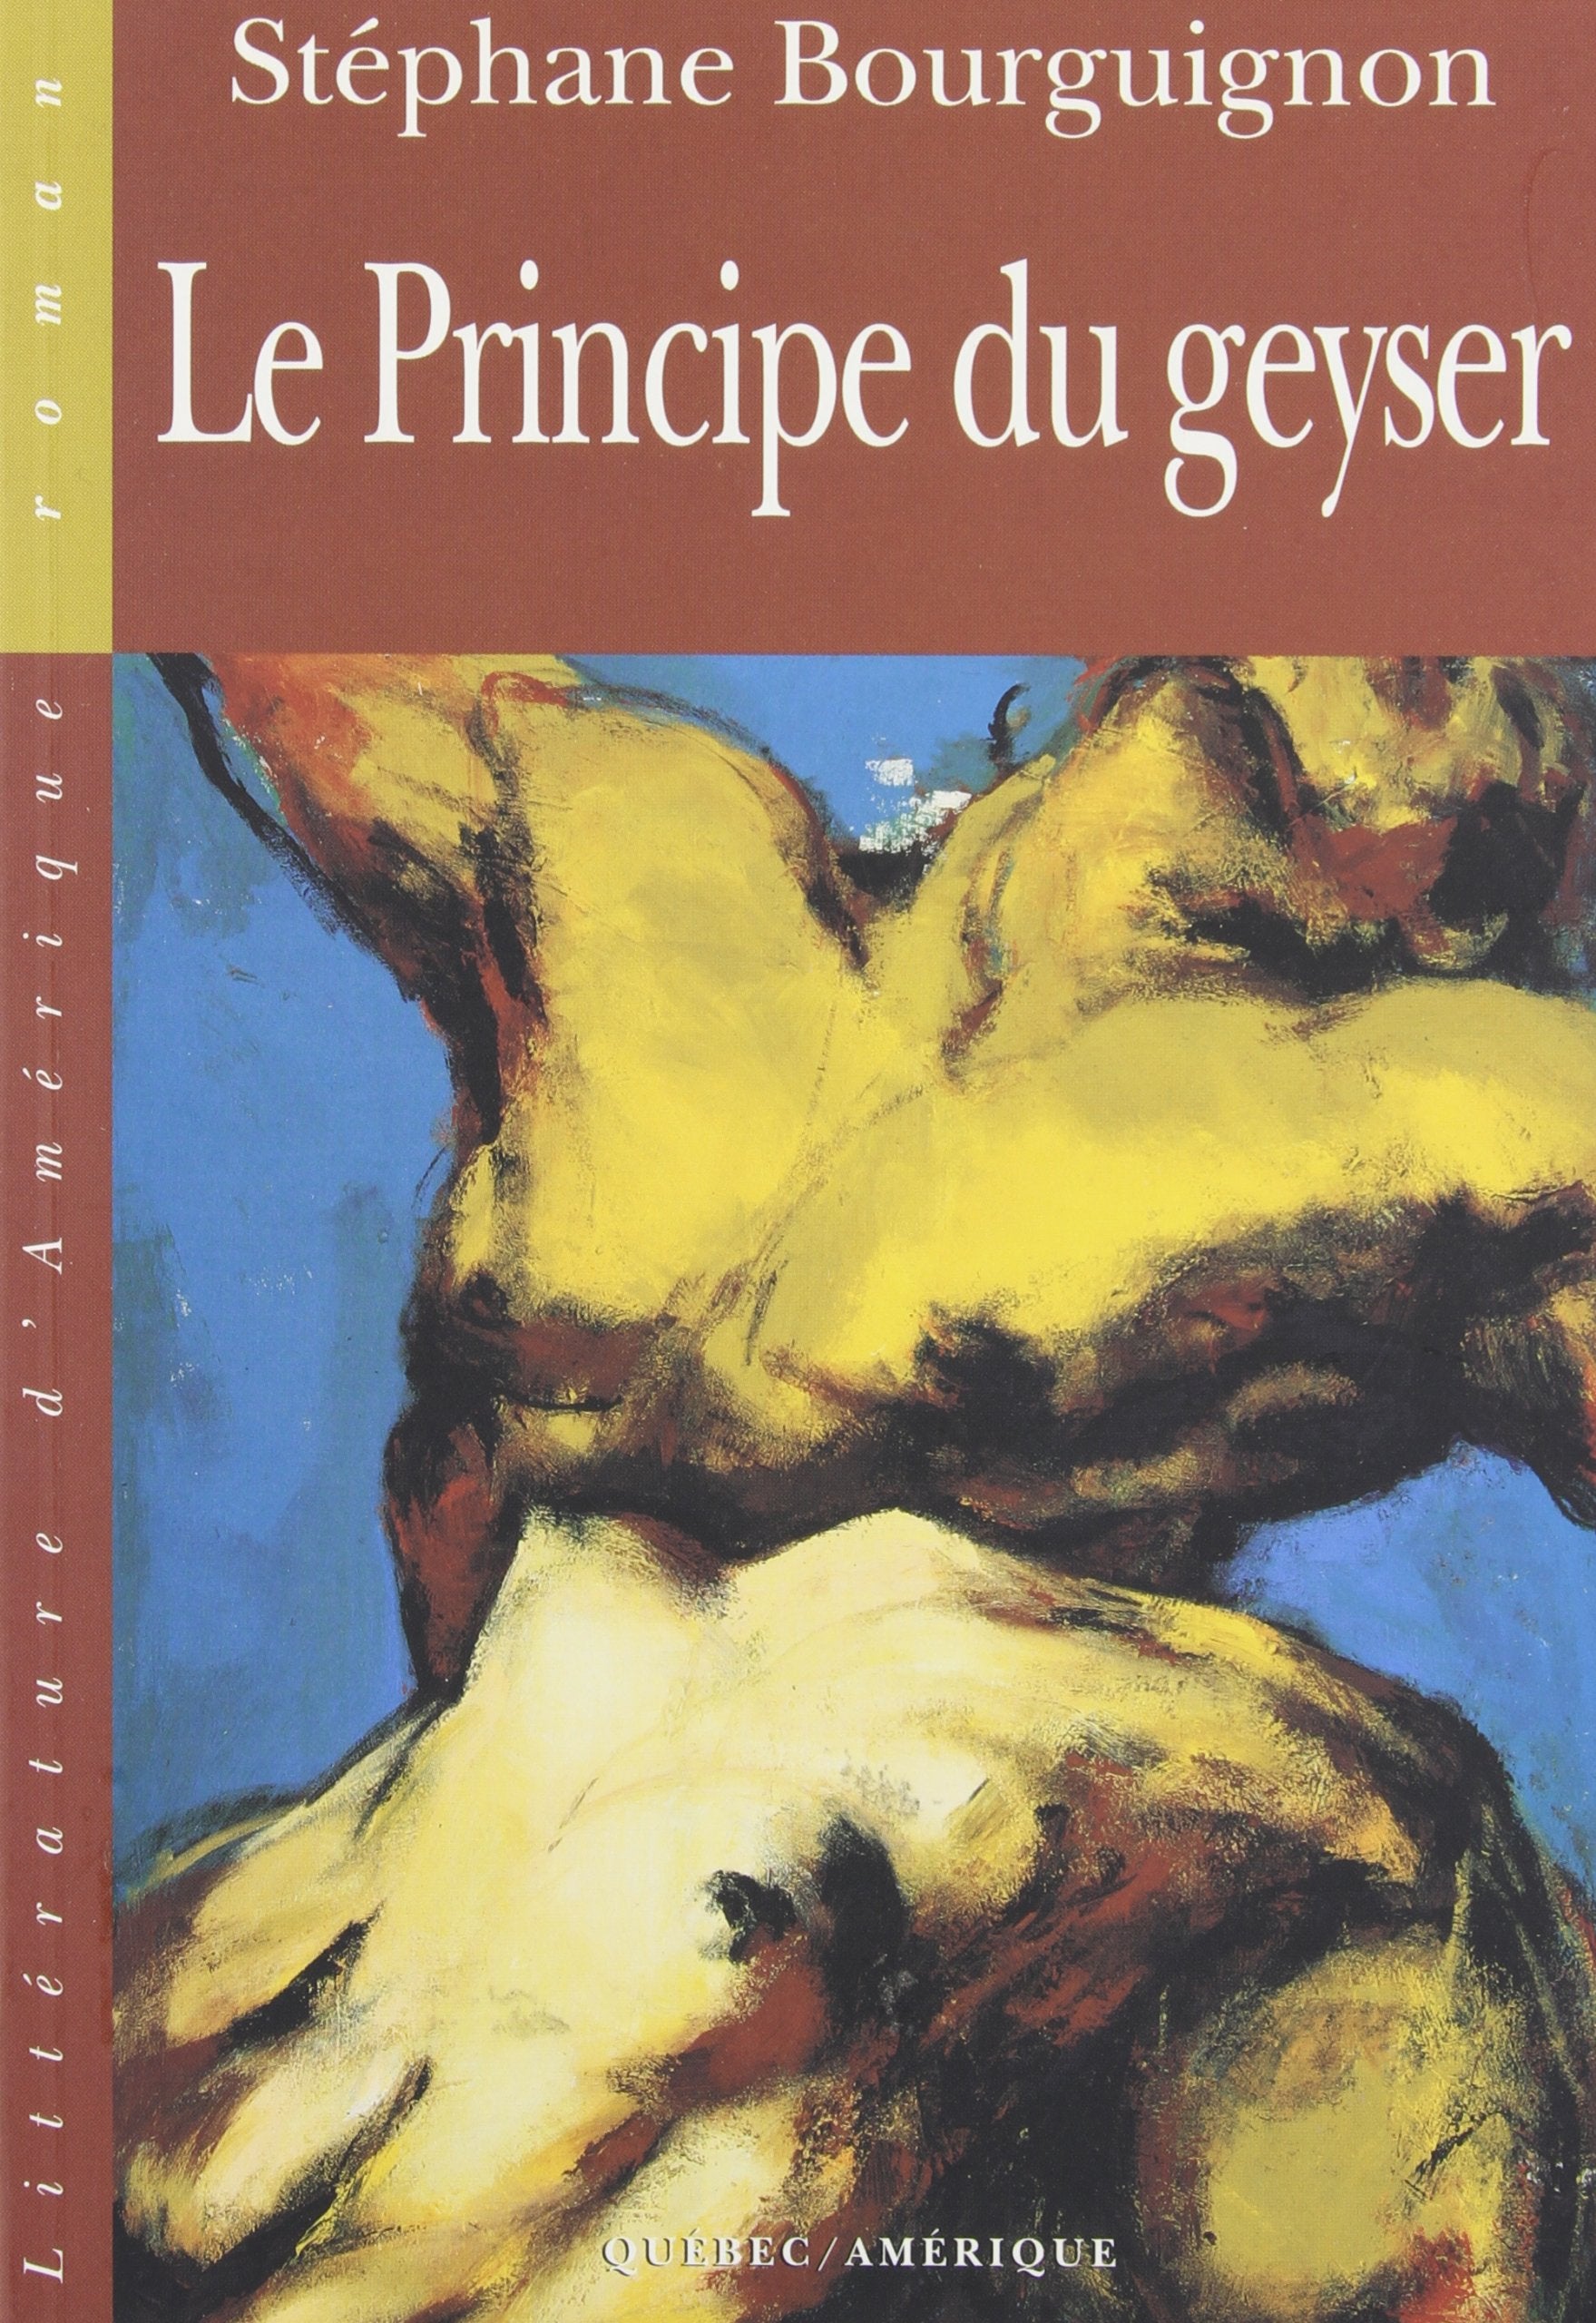 Livre ISBN 2890378918 Le principe du geyser (Stéphane Bourguignon)